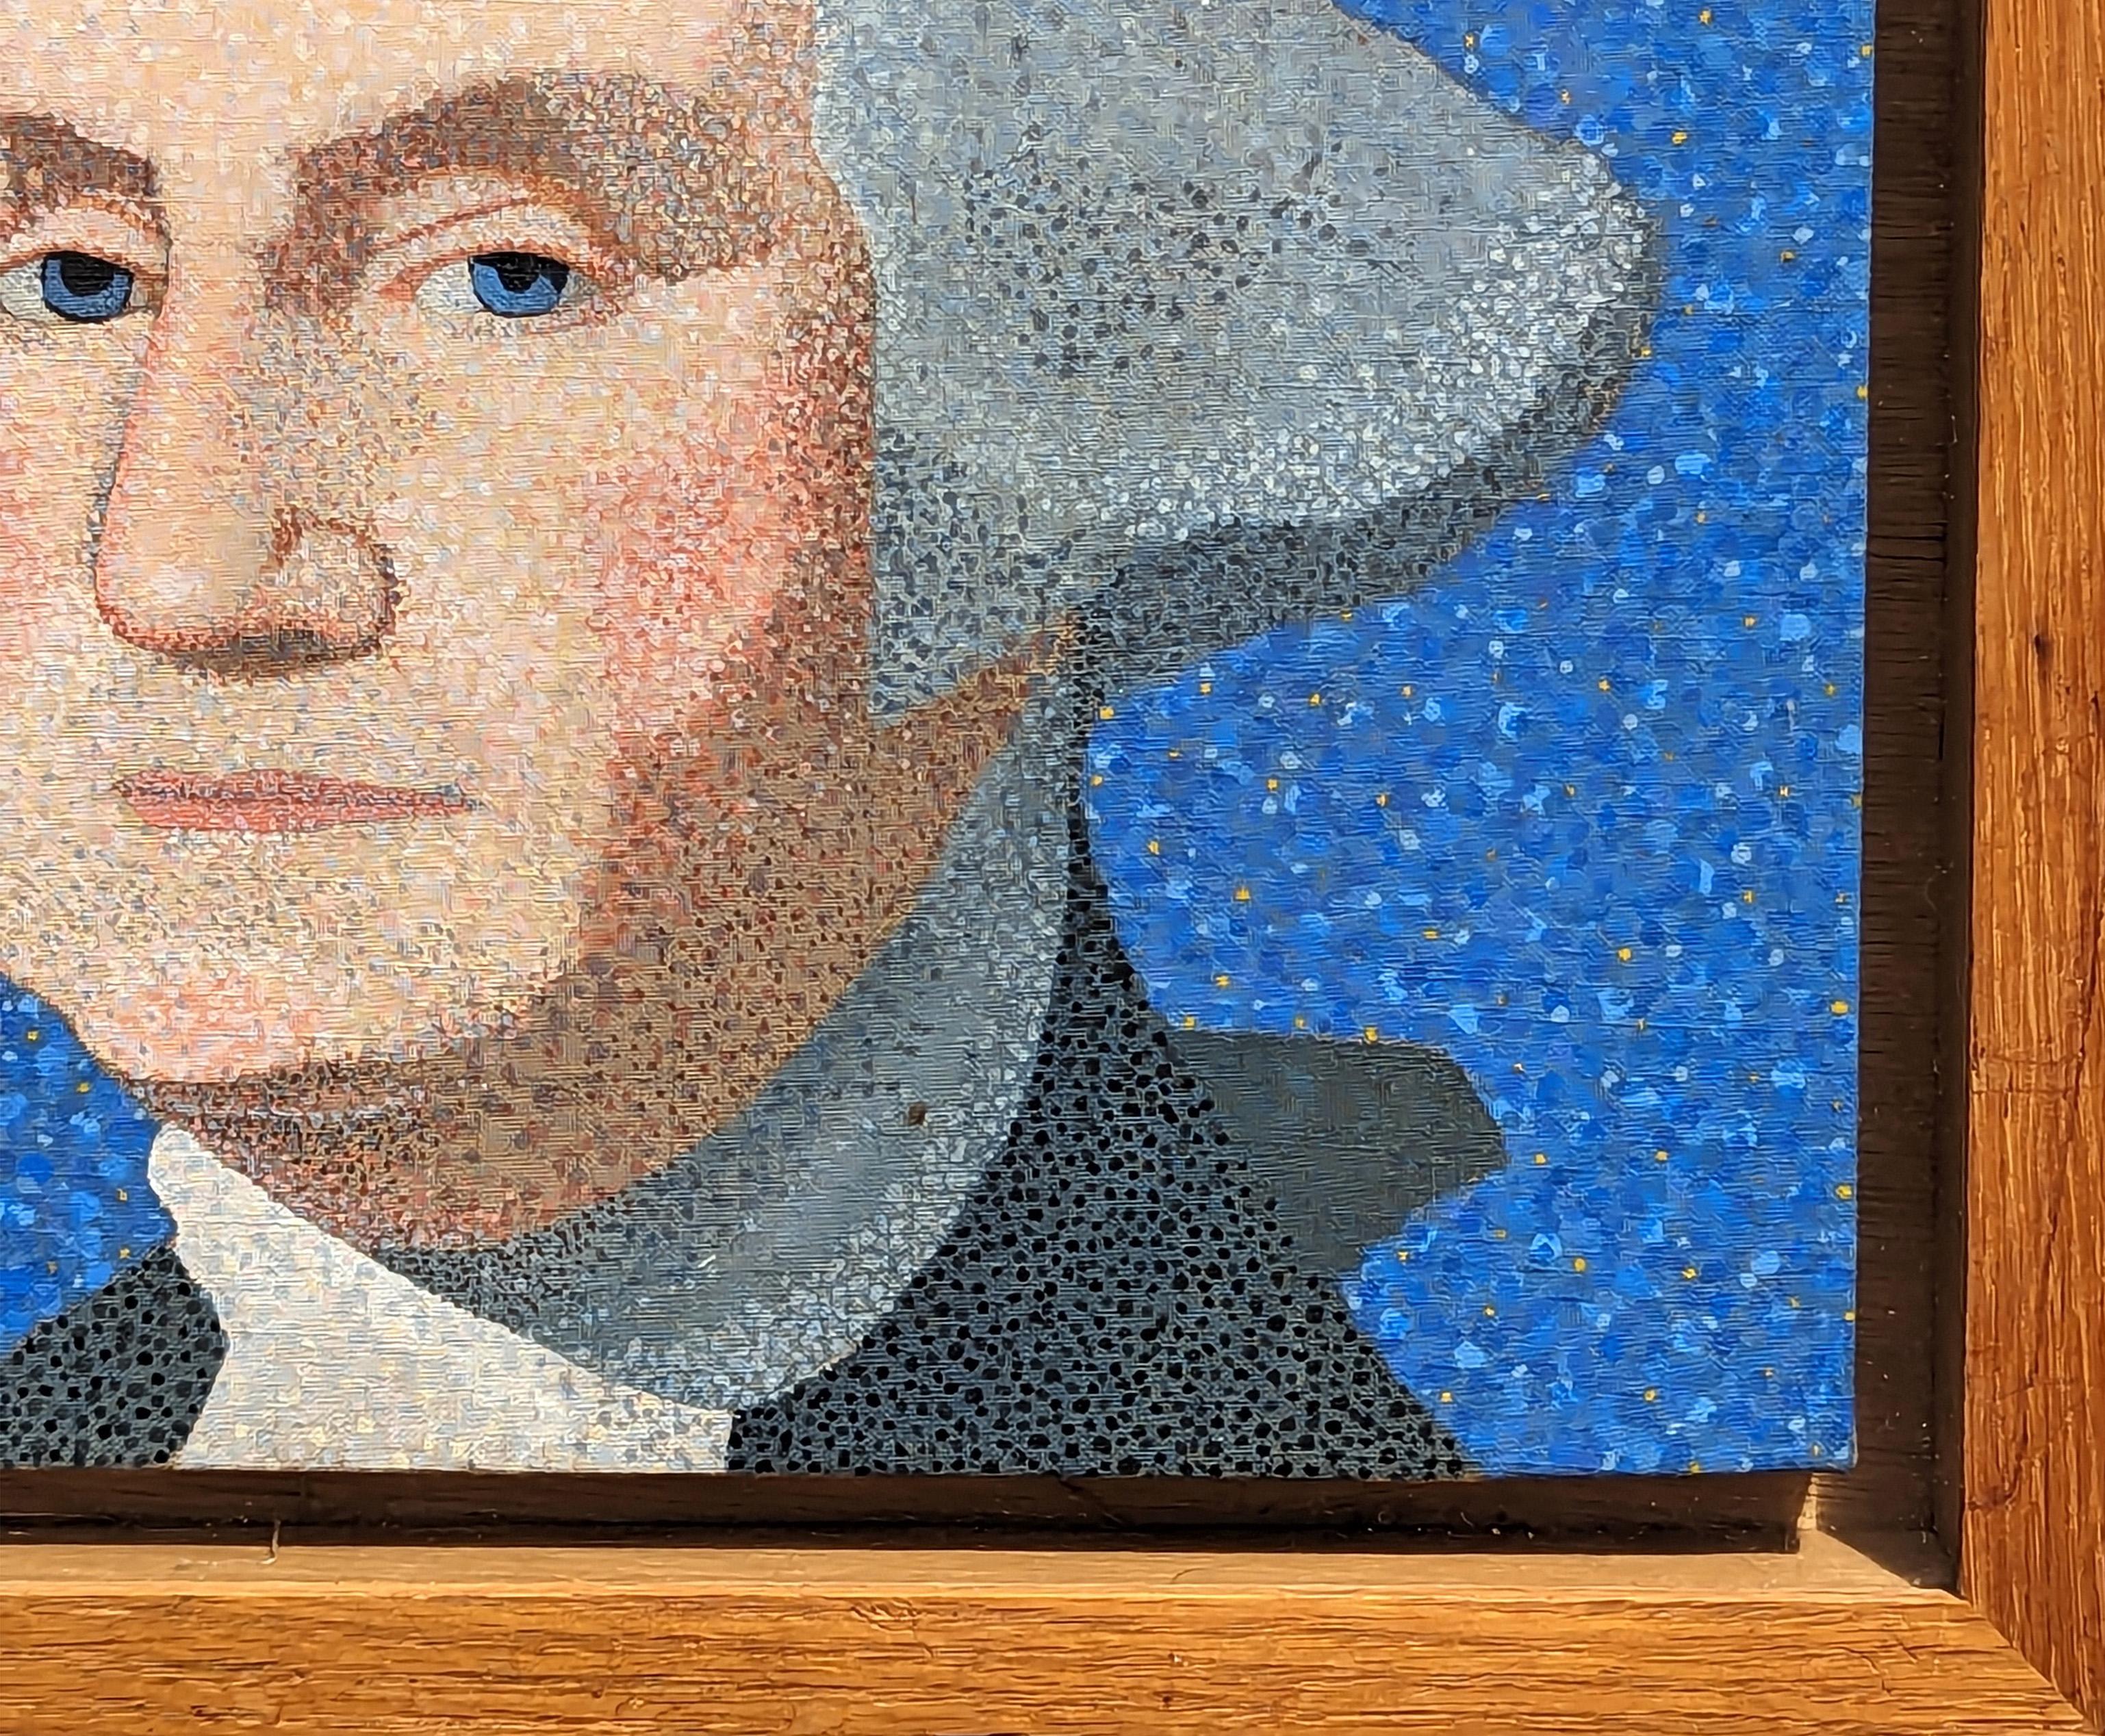 Portrait moderne de George Washington par l'artiste Clark Fox, né au Texas. L'œuvre présente une représentation complexe de l'ancien président en utilisant le pointillisme, une pratique qui consiste à appliquer de petites touches ou des points de